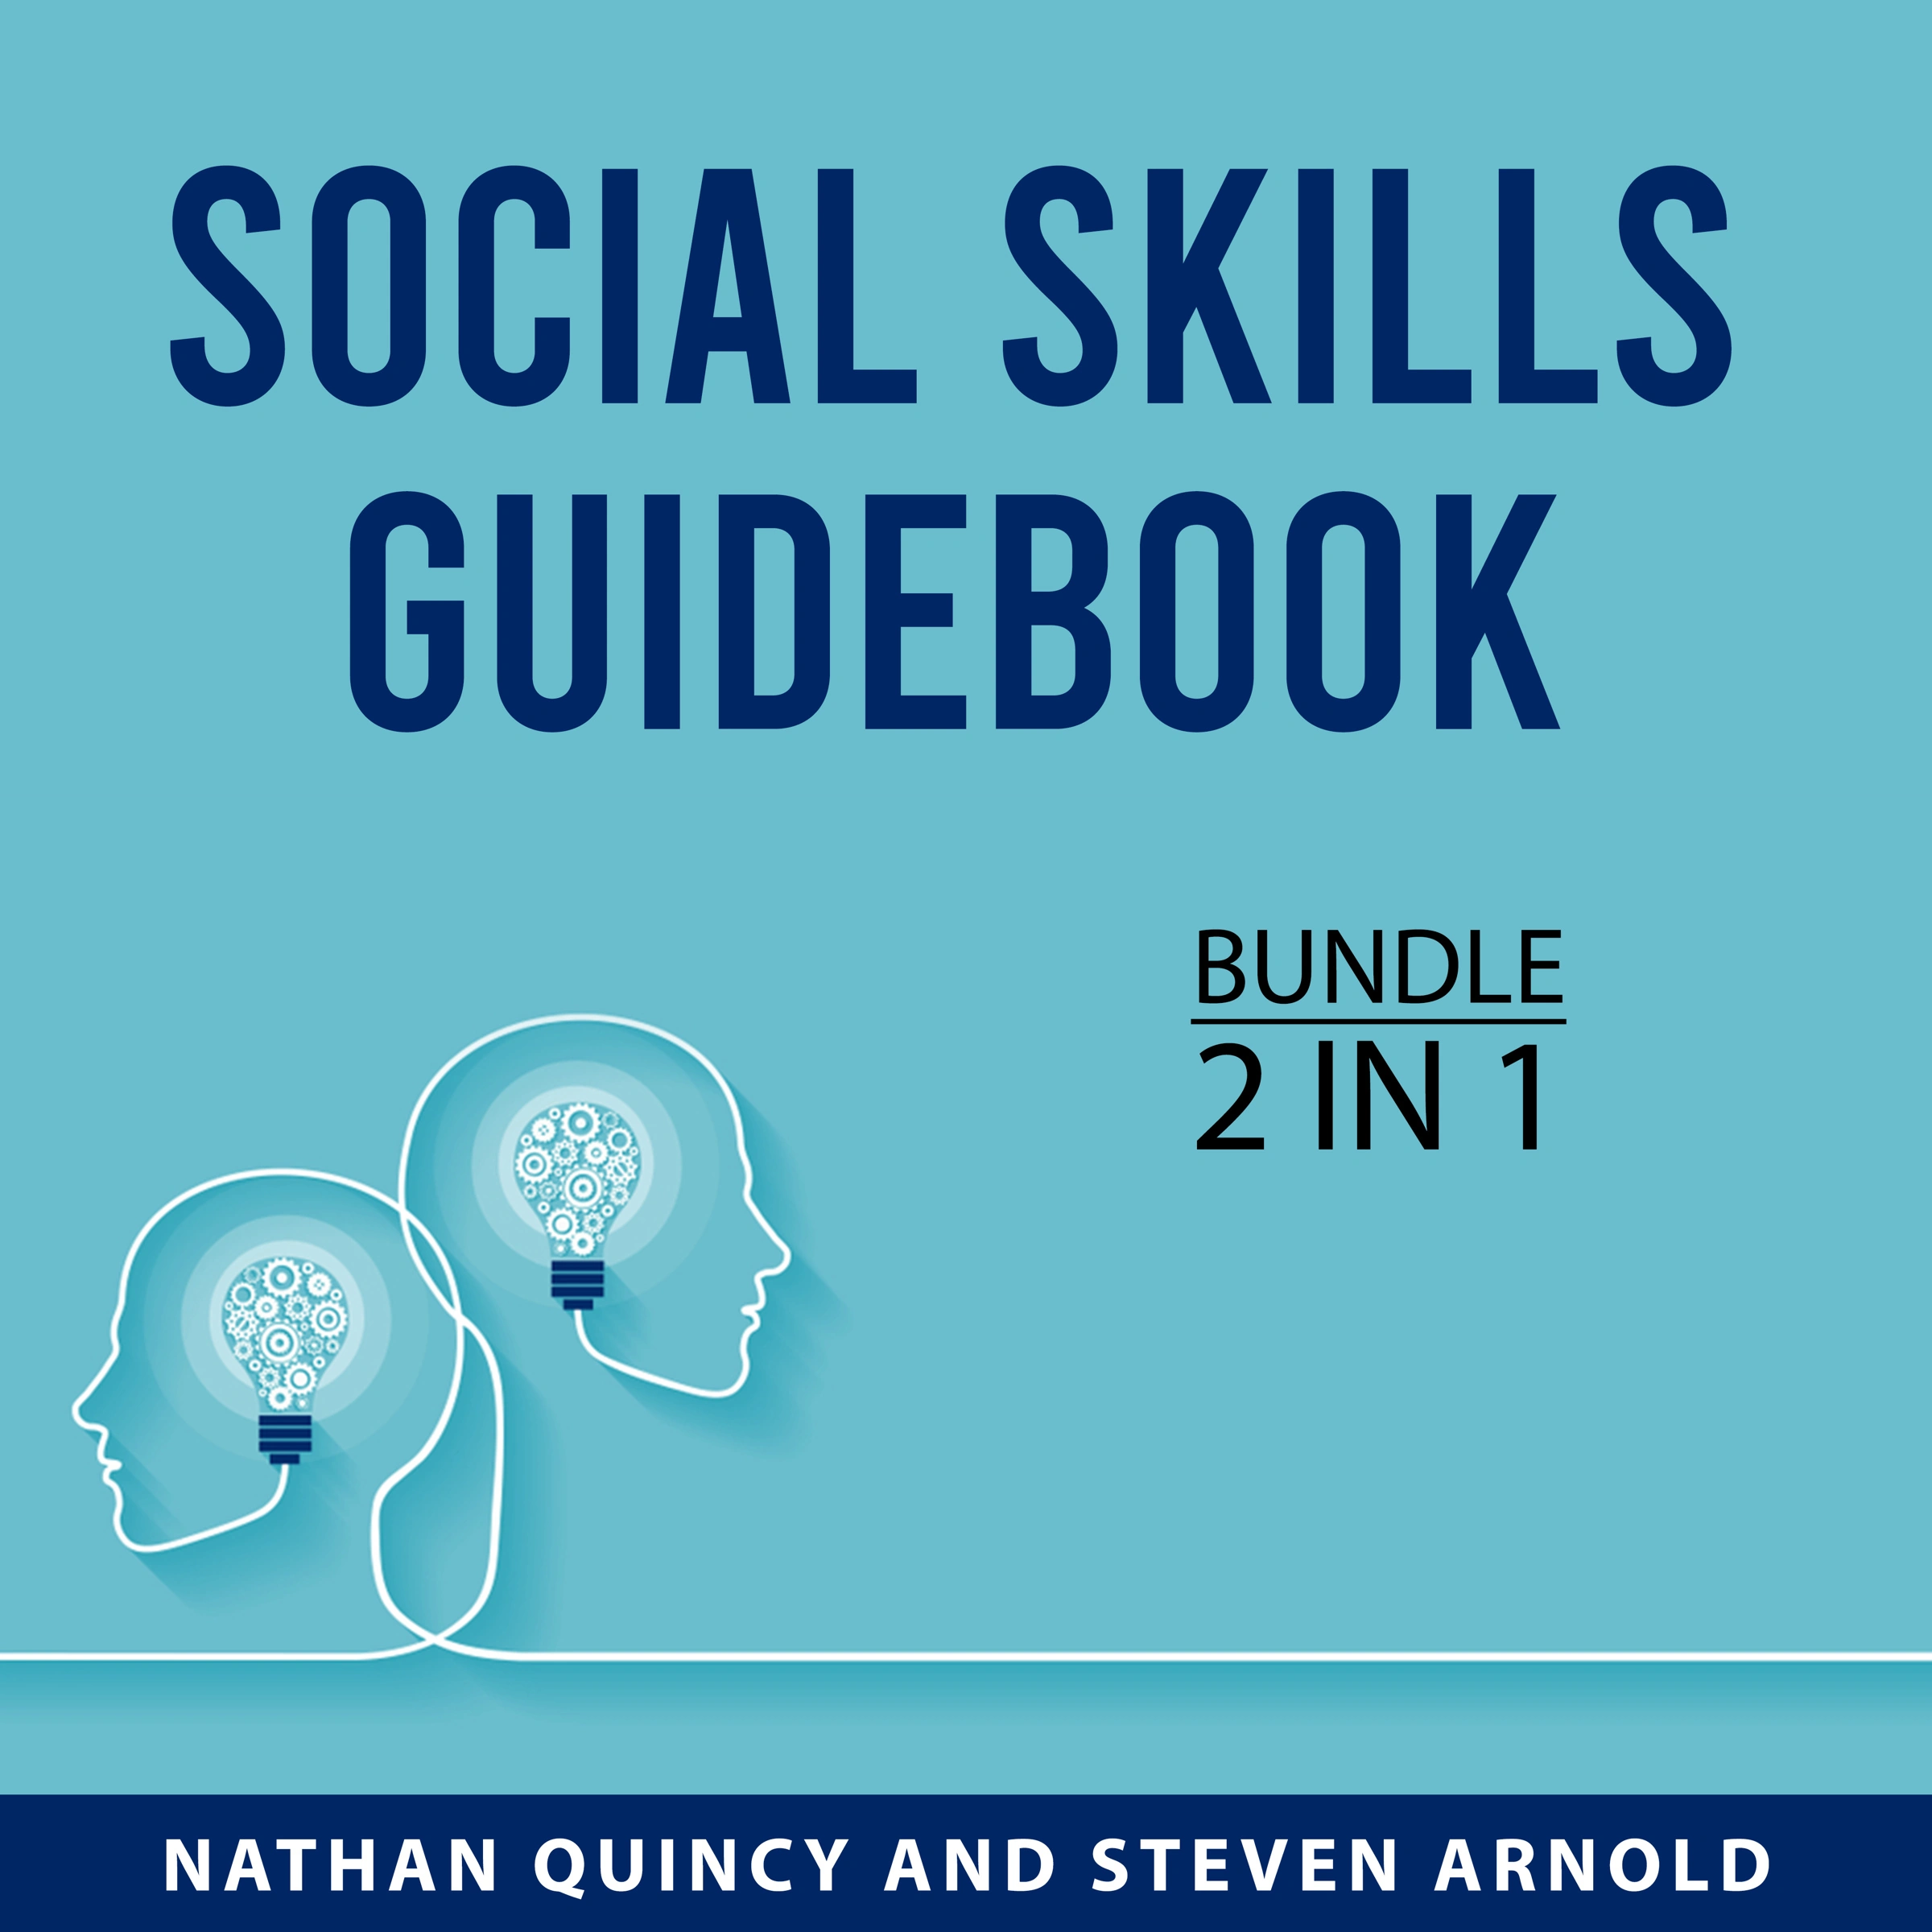 Social Skills Guidebook Bundle, 2 in 1 Bundle Audiobook by Steven Arnold